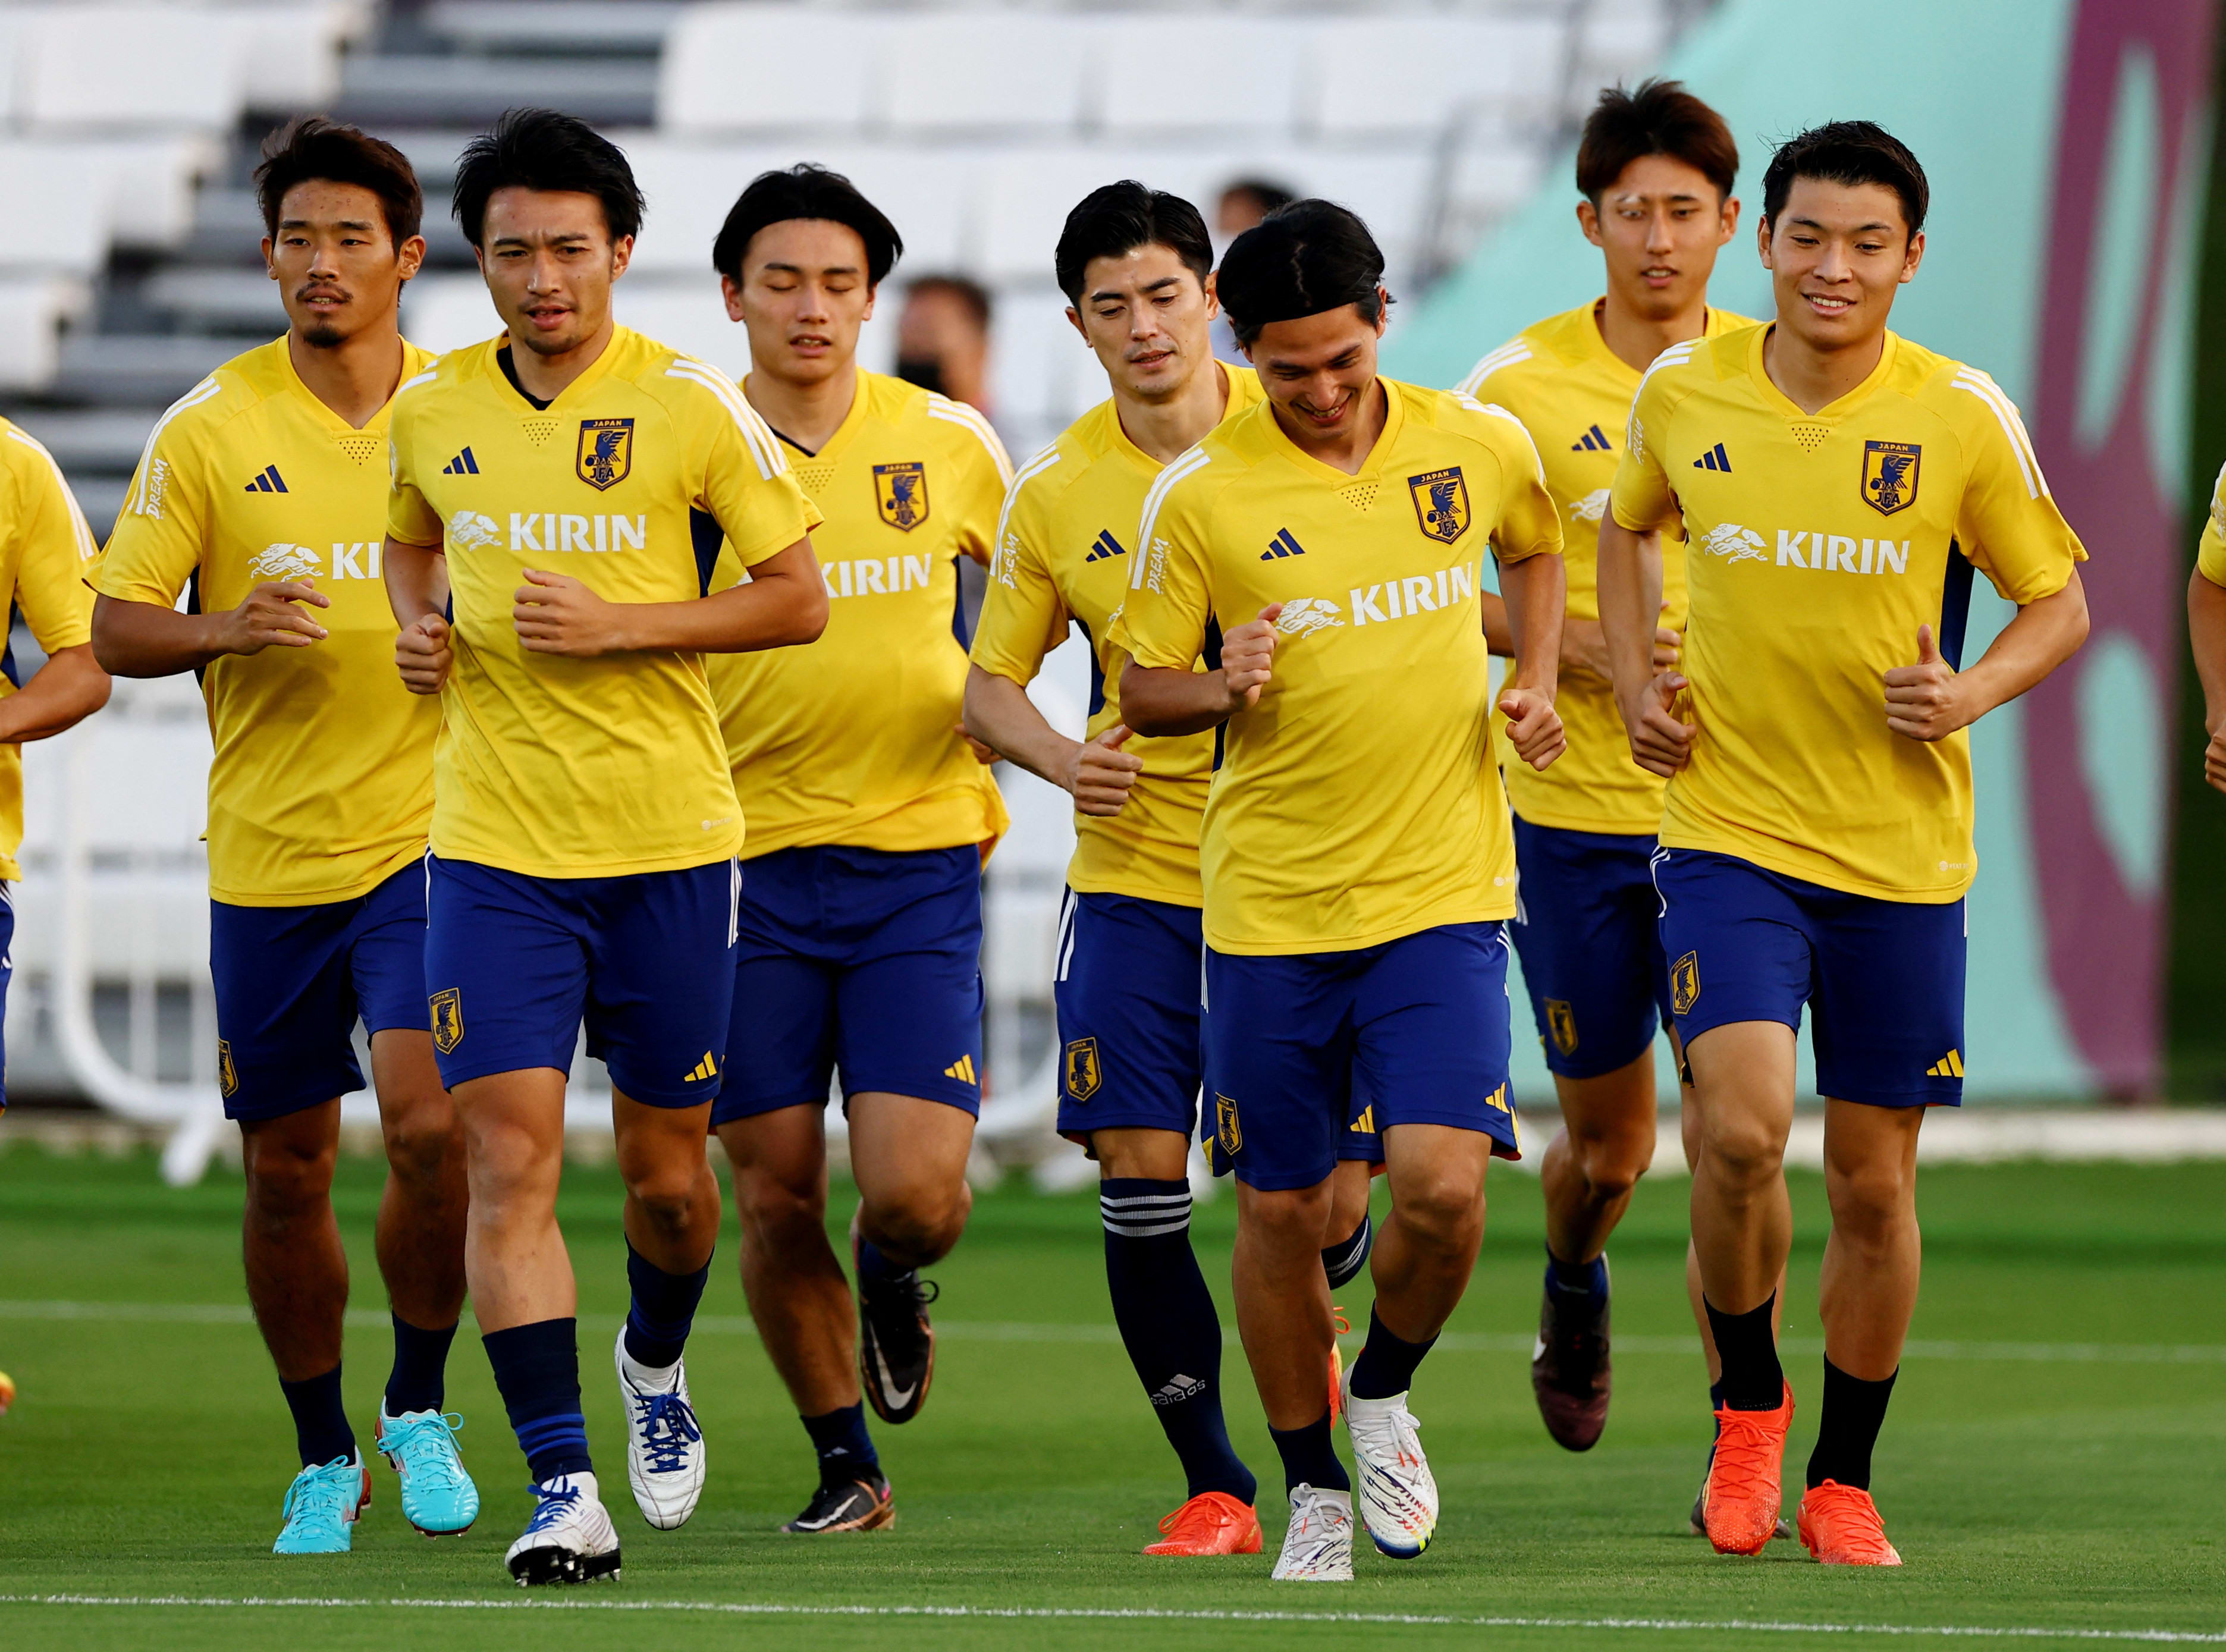 שחקני נבחרת יפן באימון